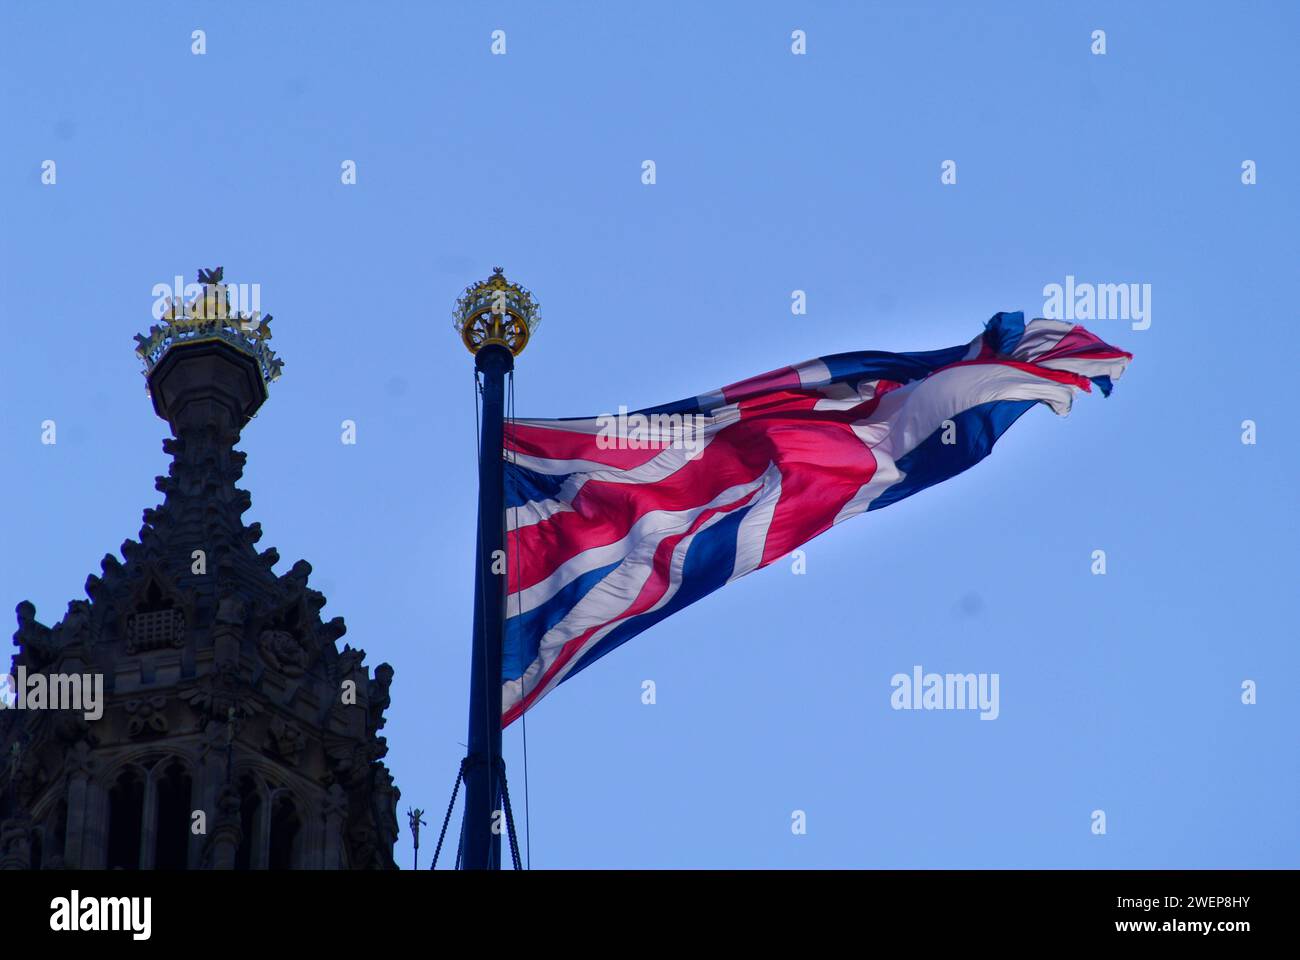 London: Nur mit Union Jack. - Die britische Nationalflagge Union Jack flattert in London über dem Parlamentsgebäude, dem Houses of Parliament. *** Lon Stock Photo